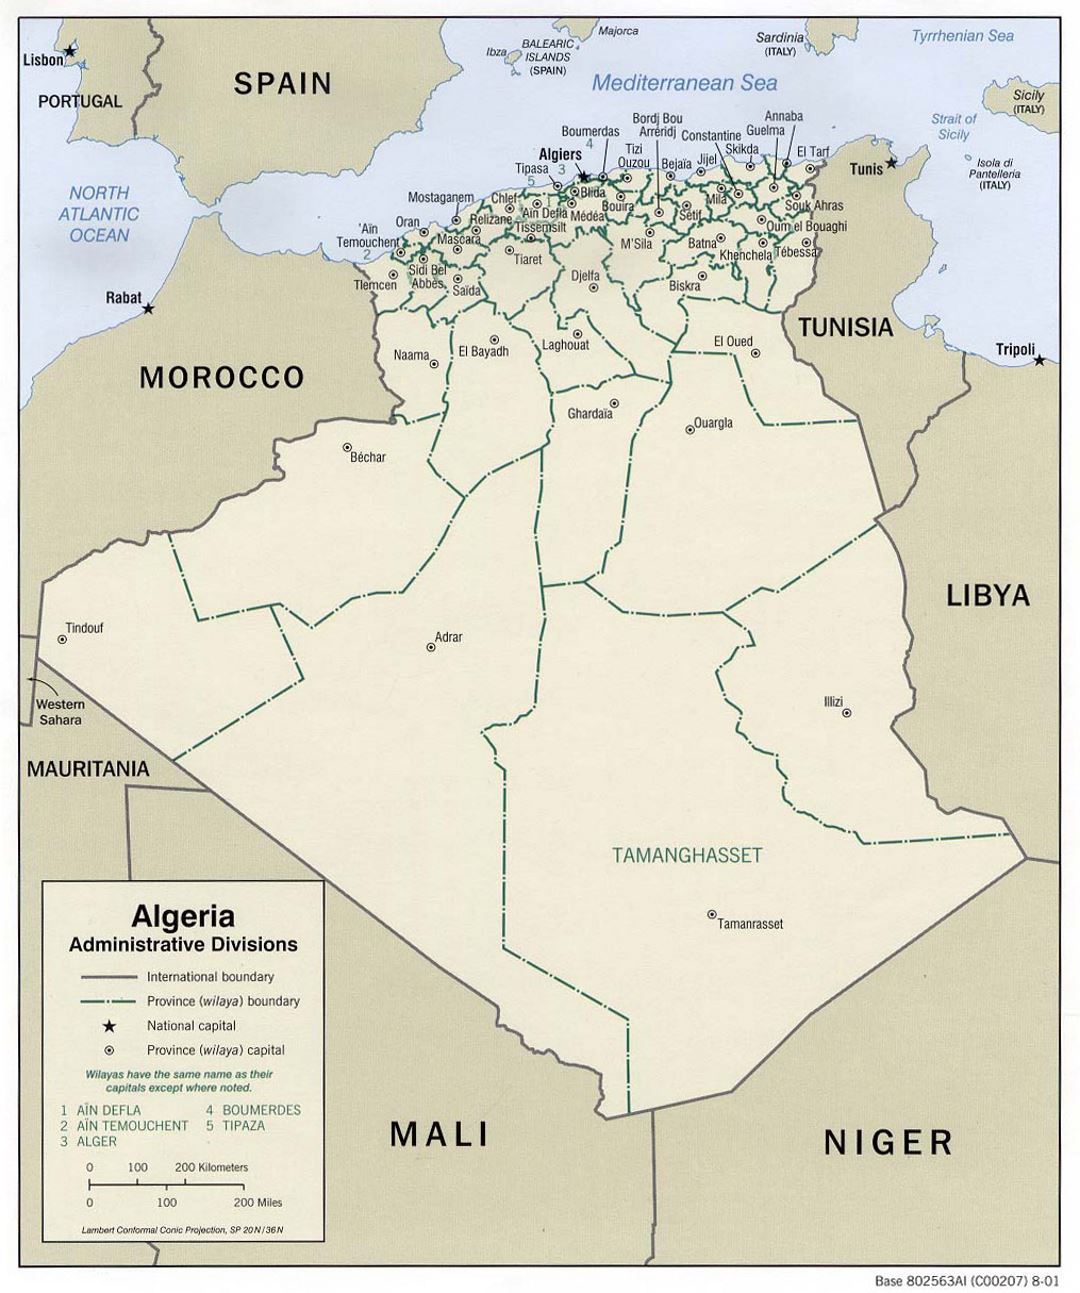 Detallado mapa de administrativas divisiones de Argelia - 2001